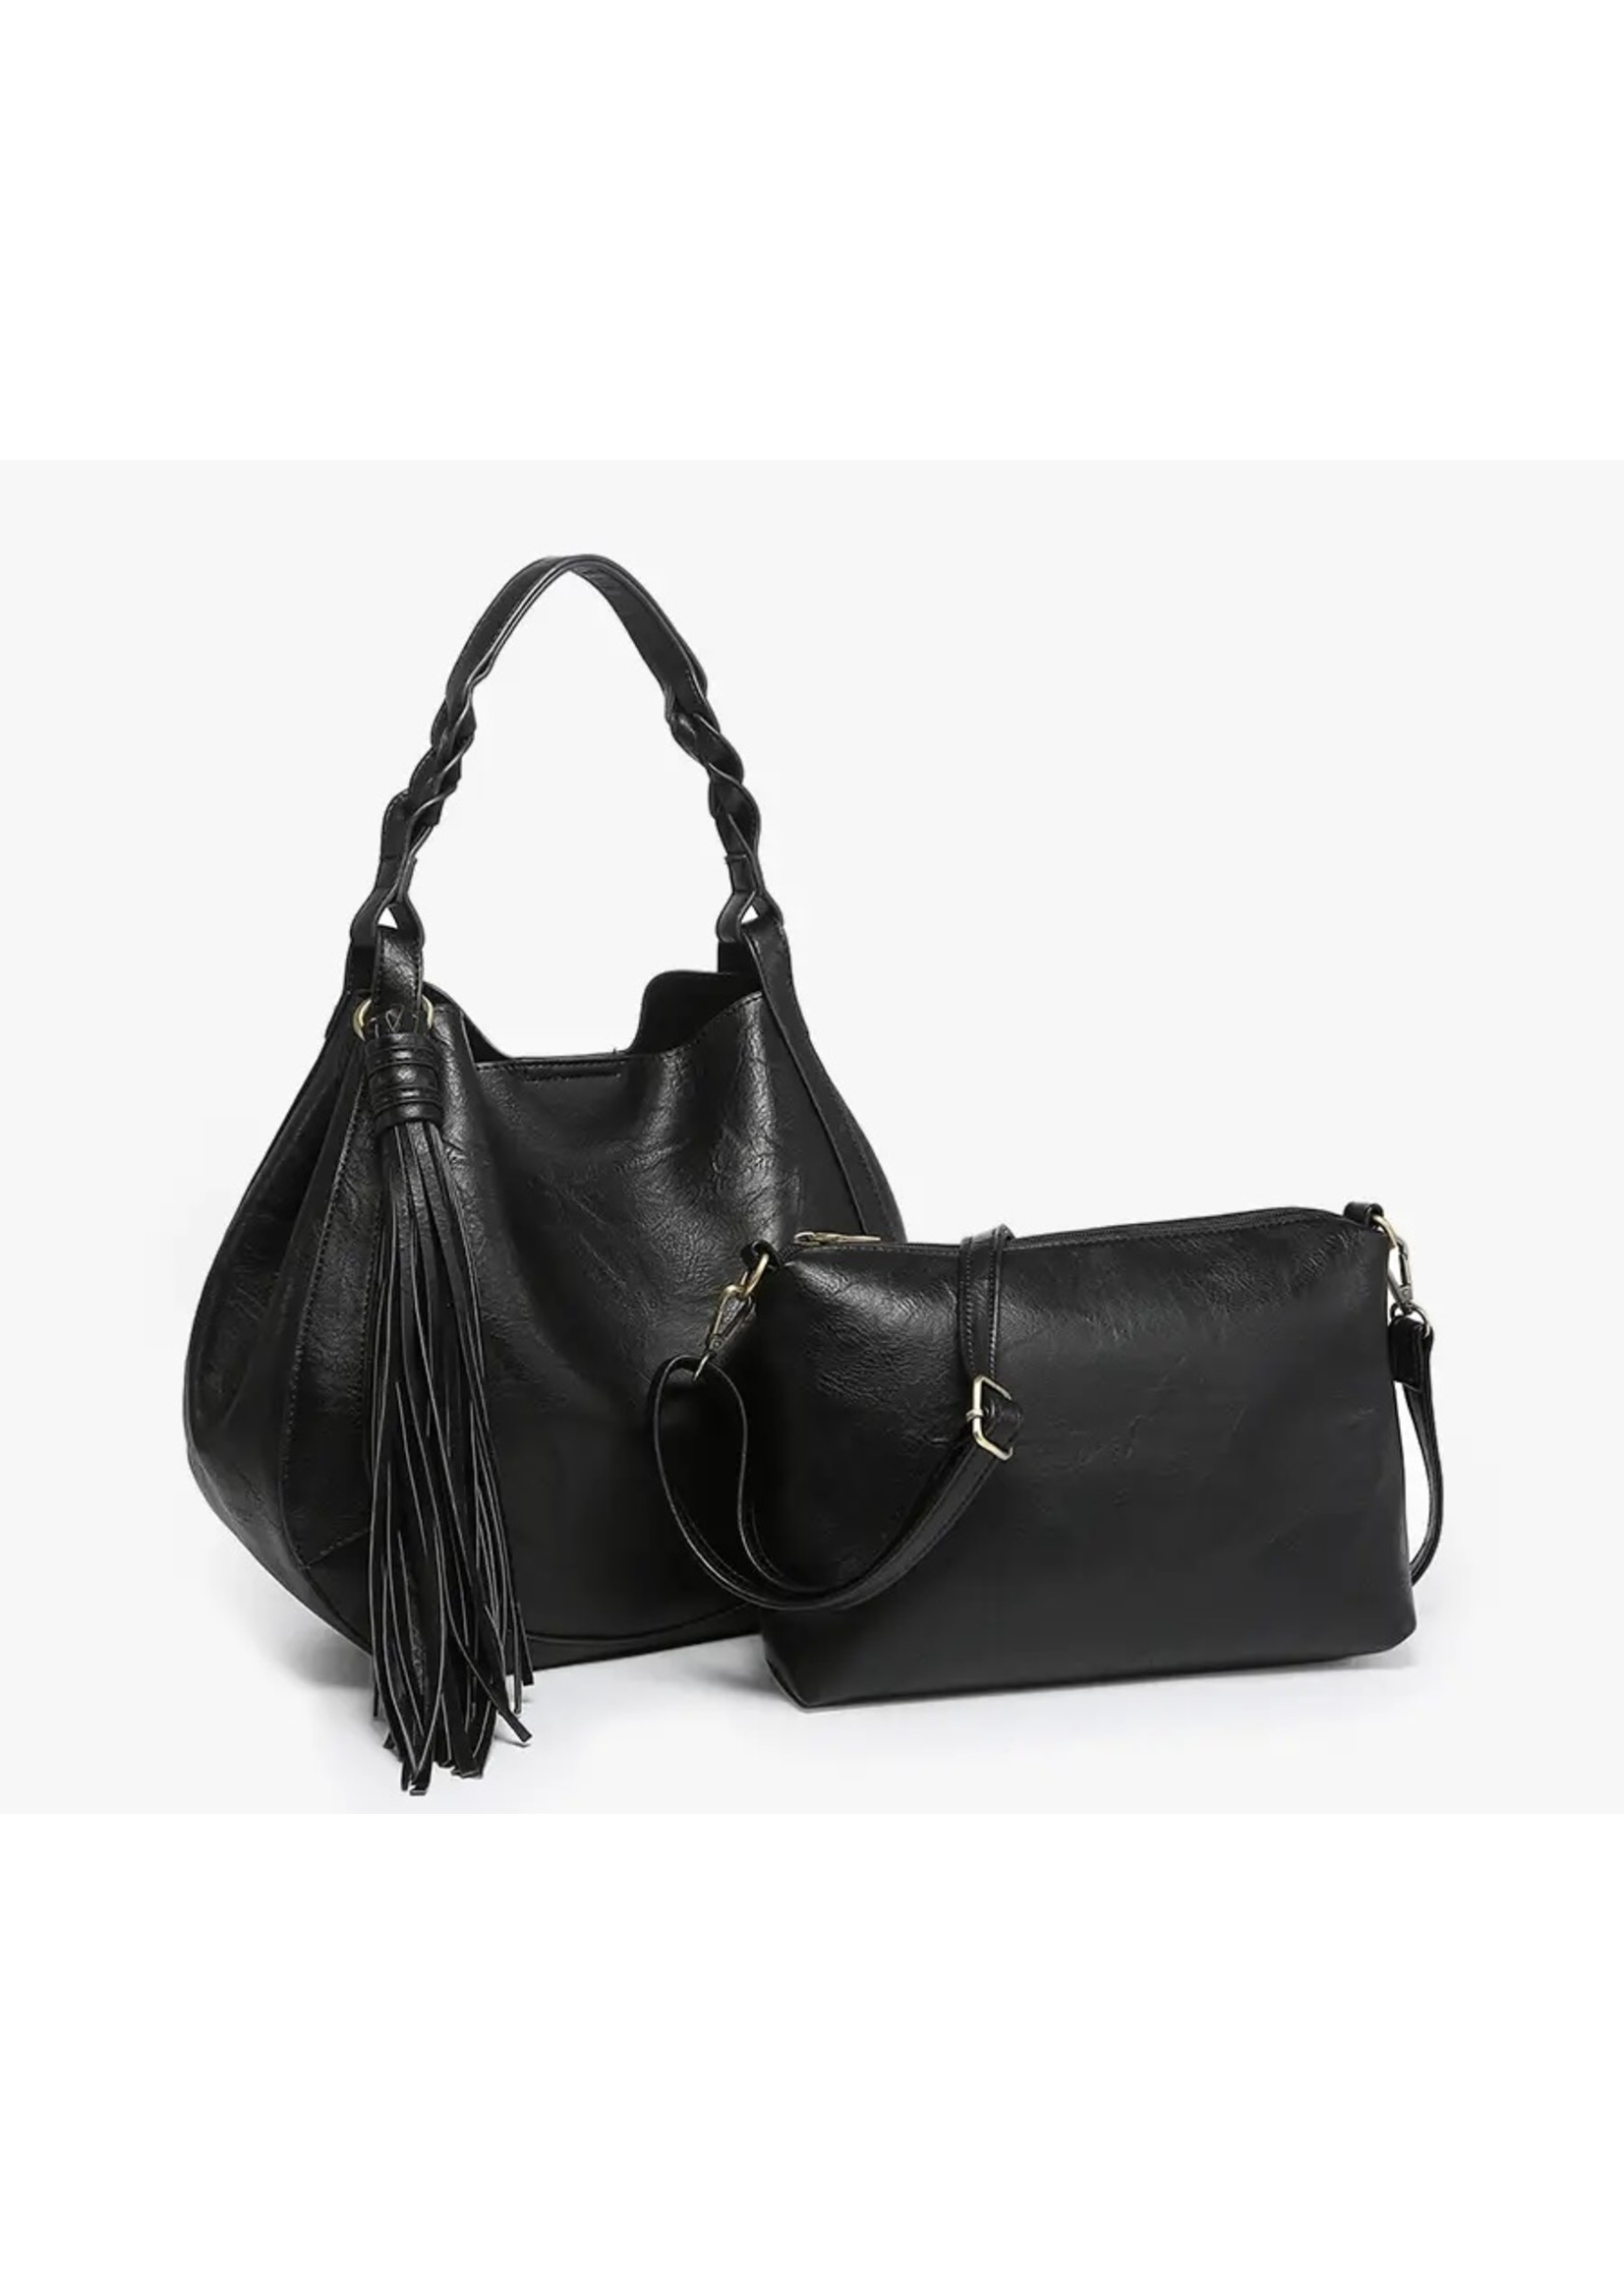 Jen & Co. Black Eloise Tassel Hobo Bag